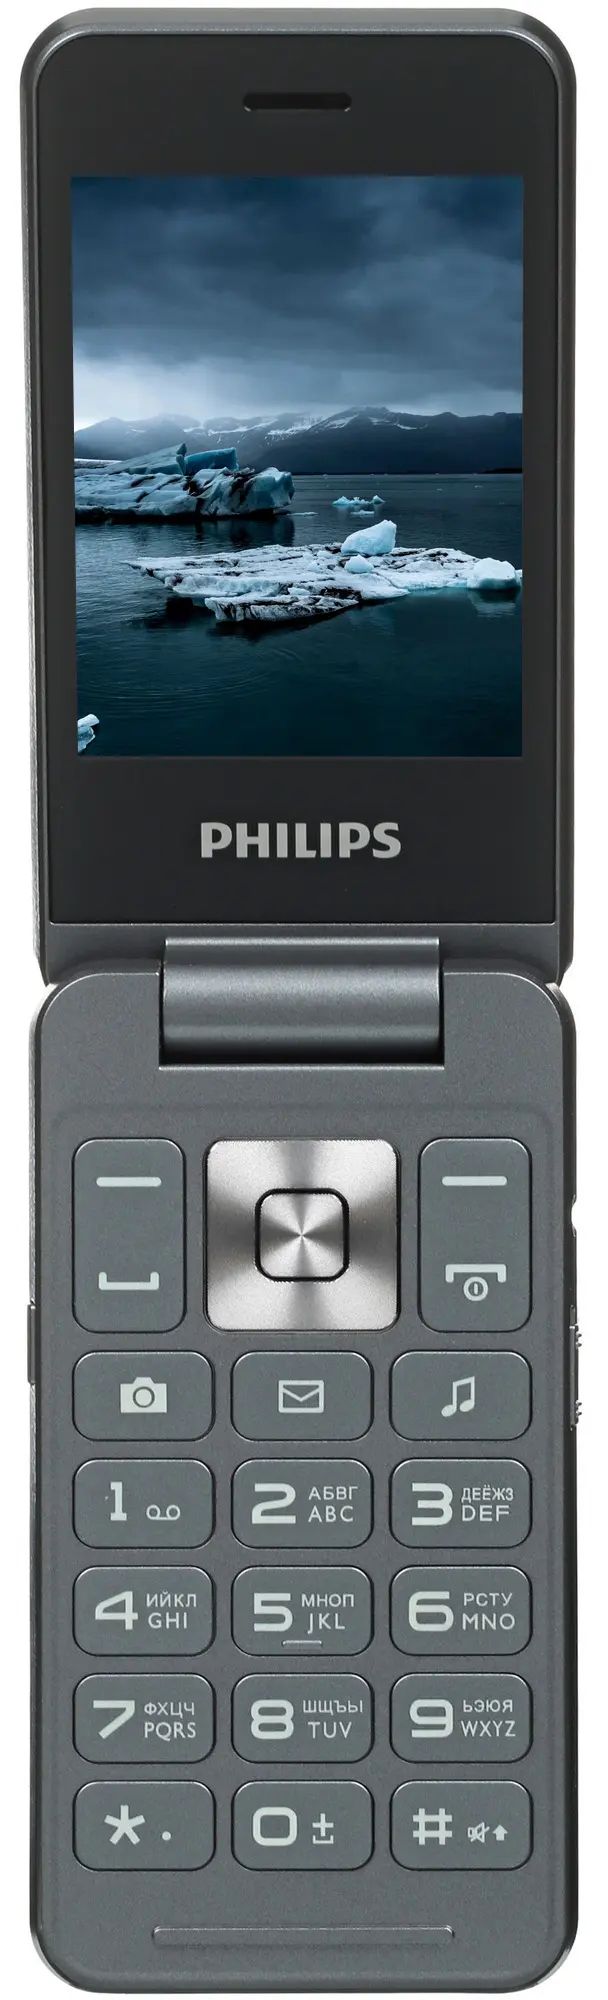 Сотовый телефон Philips Xenium E2602, темно-серый, купить в Москве, цены в интернет-магазинах на Мегамаркет